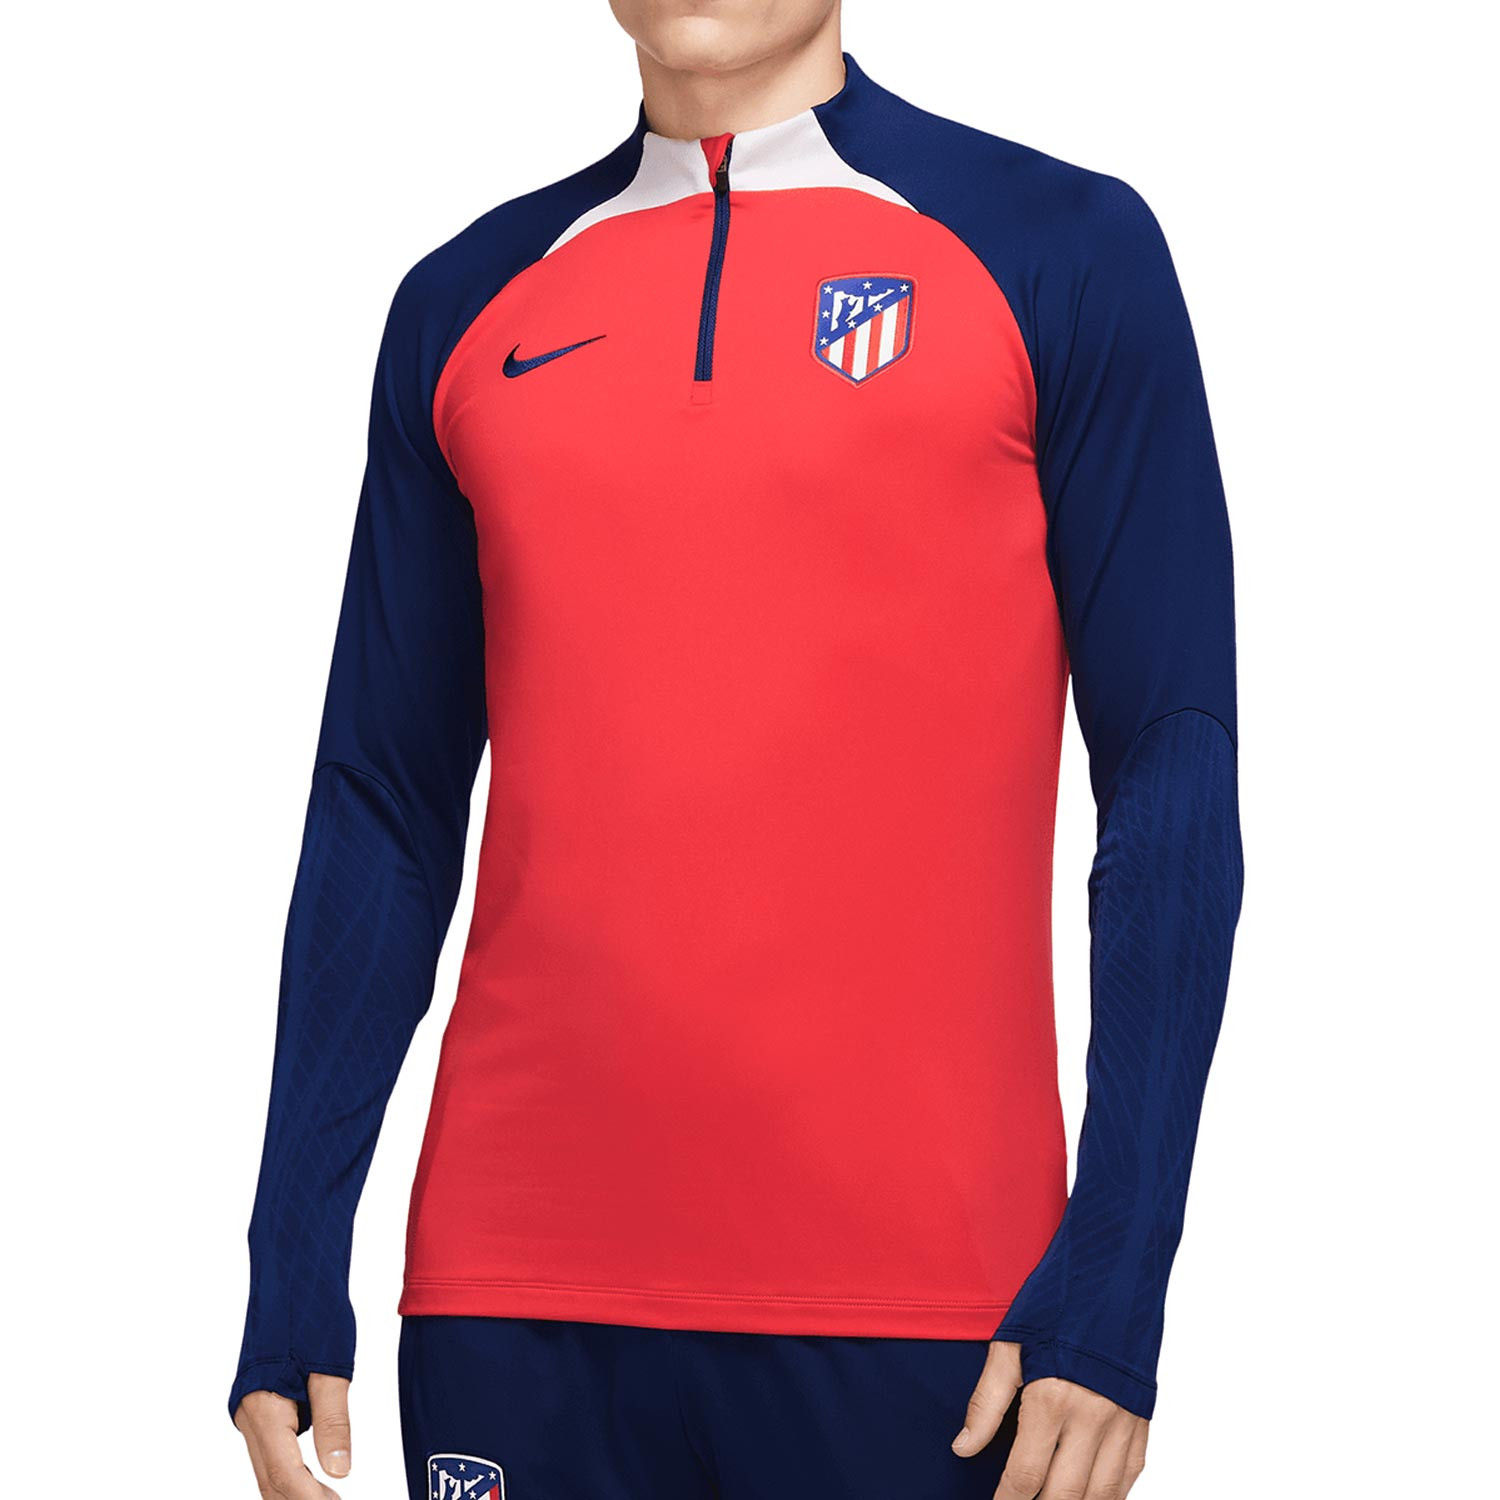 Camiseta Nike Atlético entrenamiento DF Stk roja azul